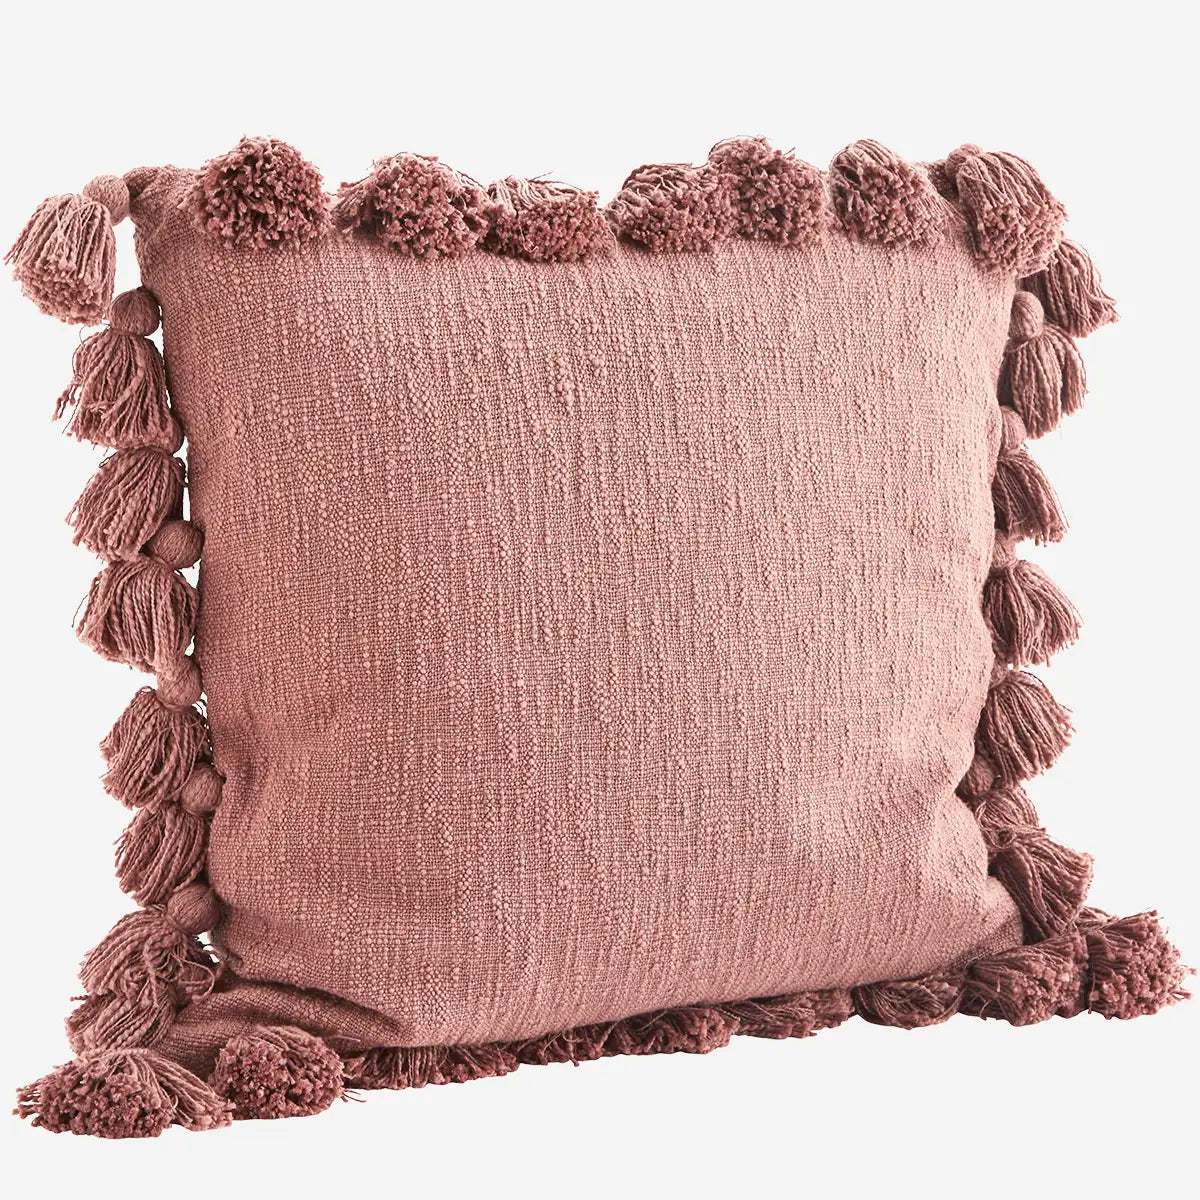 Large Tassled Cushion - Rosie 60cm